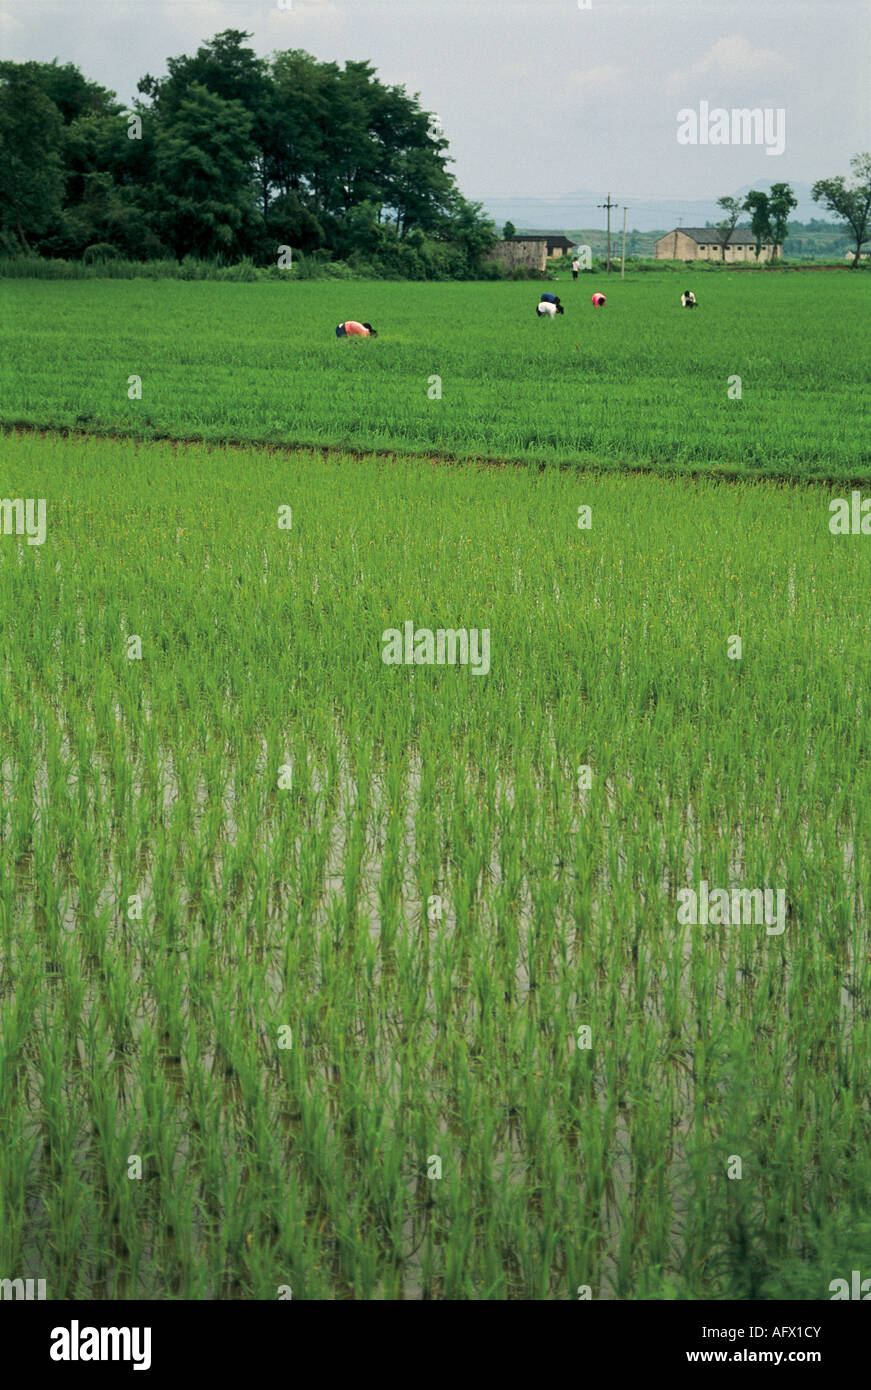 terraced fields Longsheng Guangxi China. Stock Photo